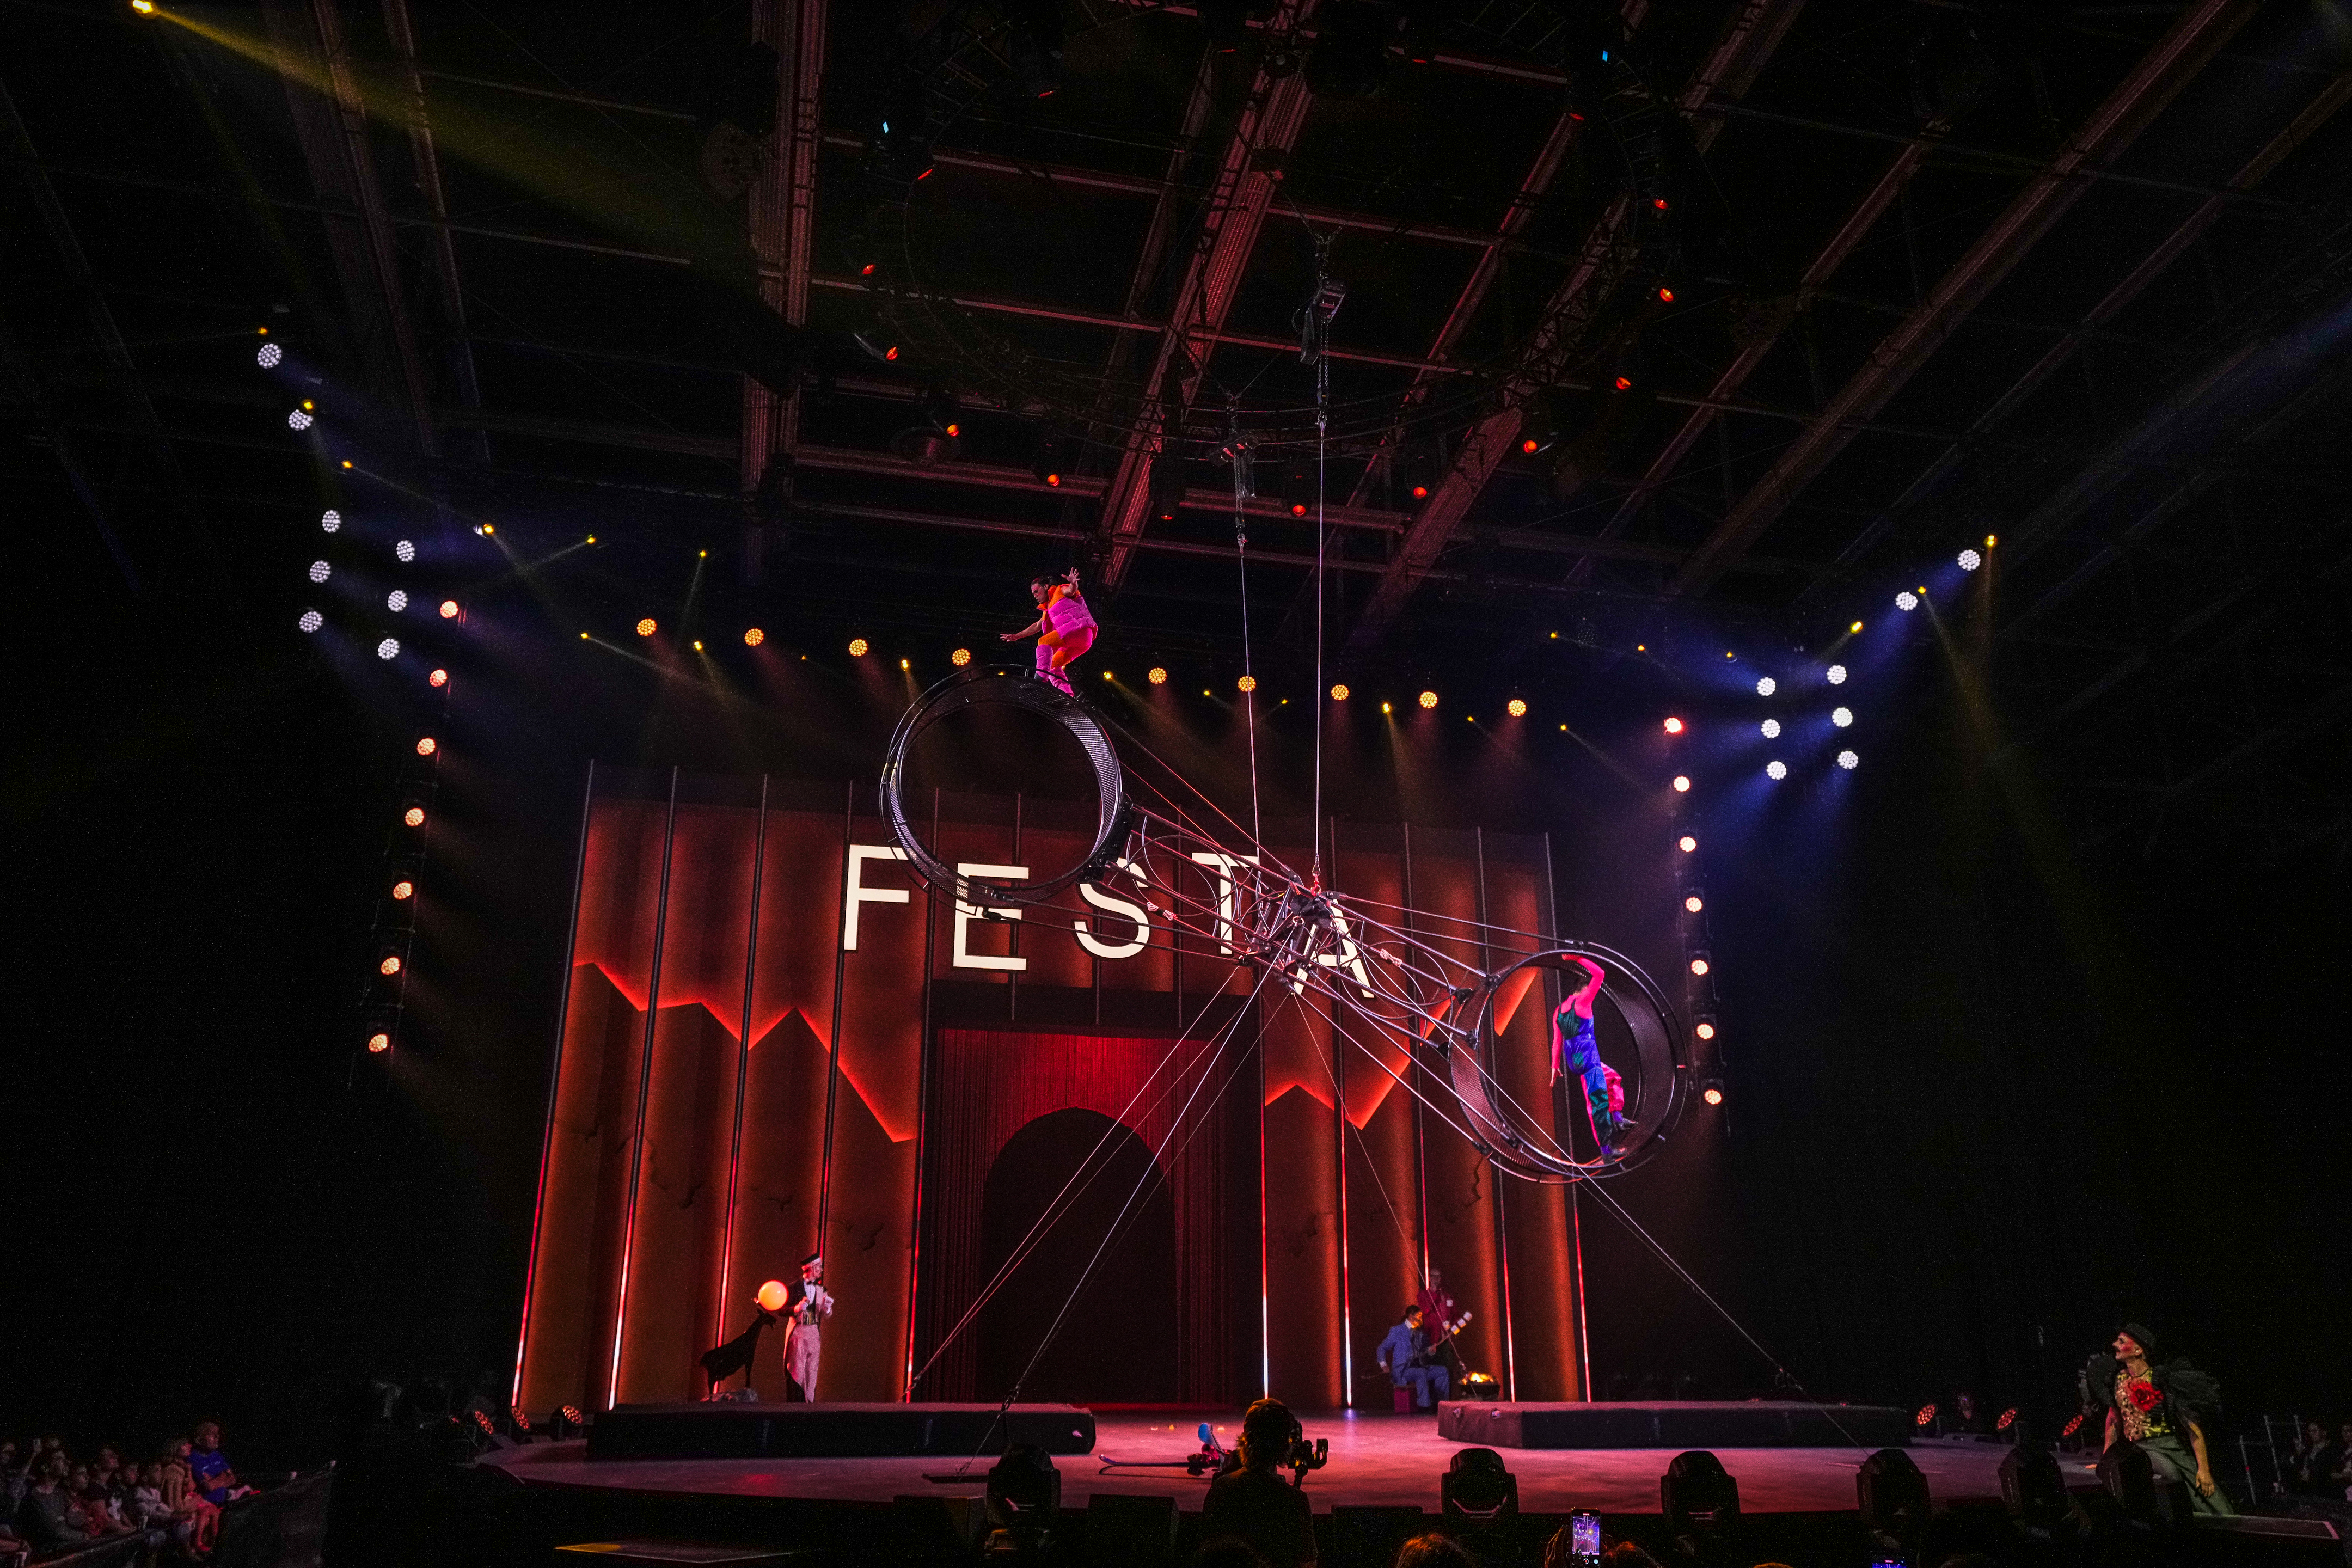 PRG is verheugd om met Cirque du Soleil en hun nieuwe show samen te werken op het gebied van Rigging, Audio en Lichttechnologie.